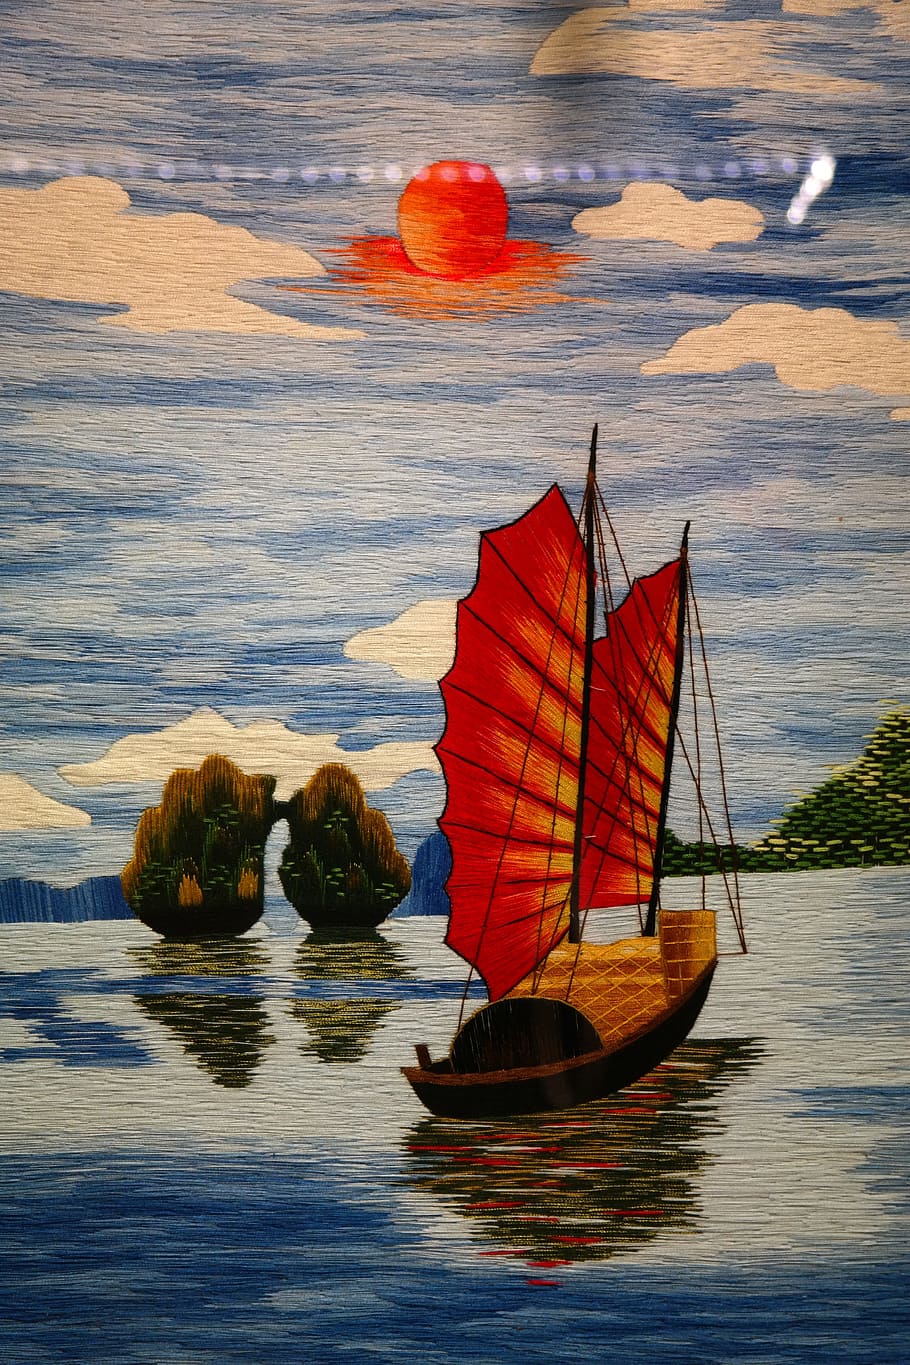 Изображение, Живопись, Ботинок, Парусная лодка, Хлам, китайский, море, вода, небо, облака